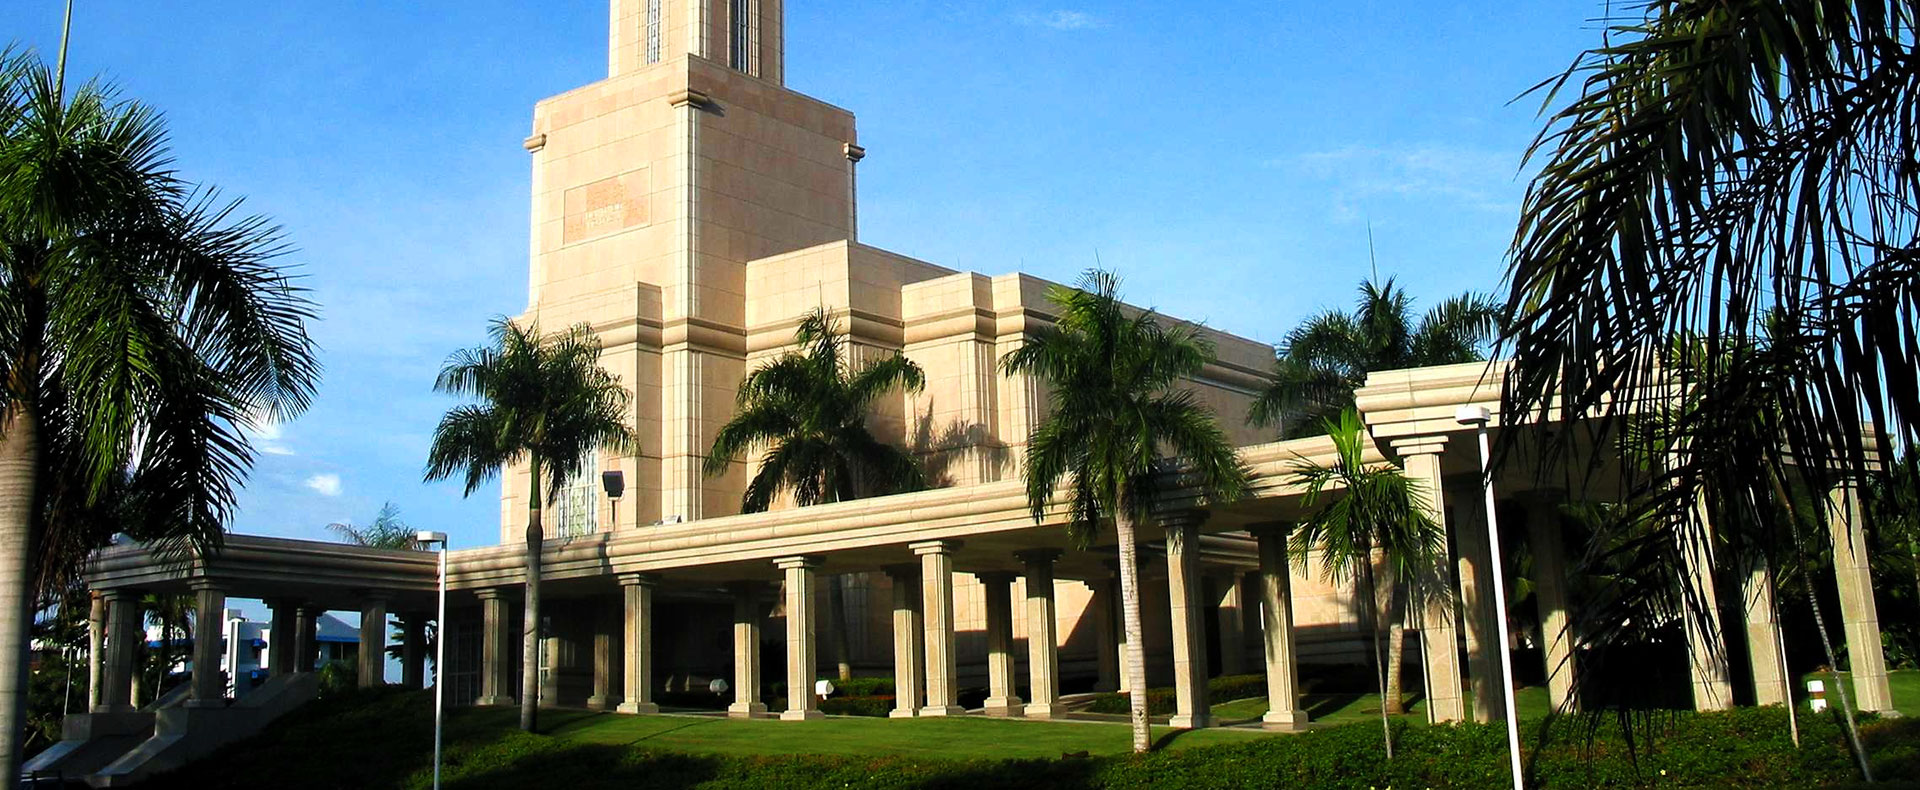 Santo Domingo Dominican Republic Temple